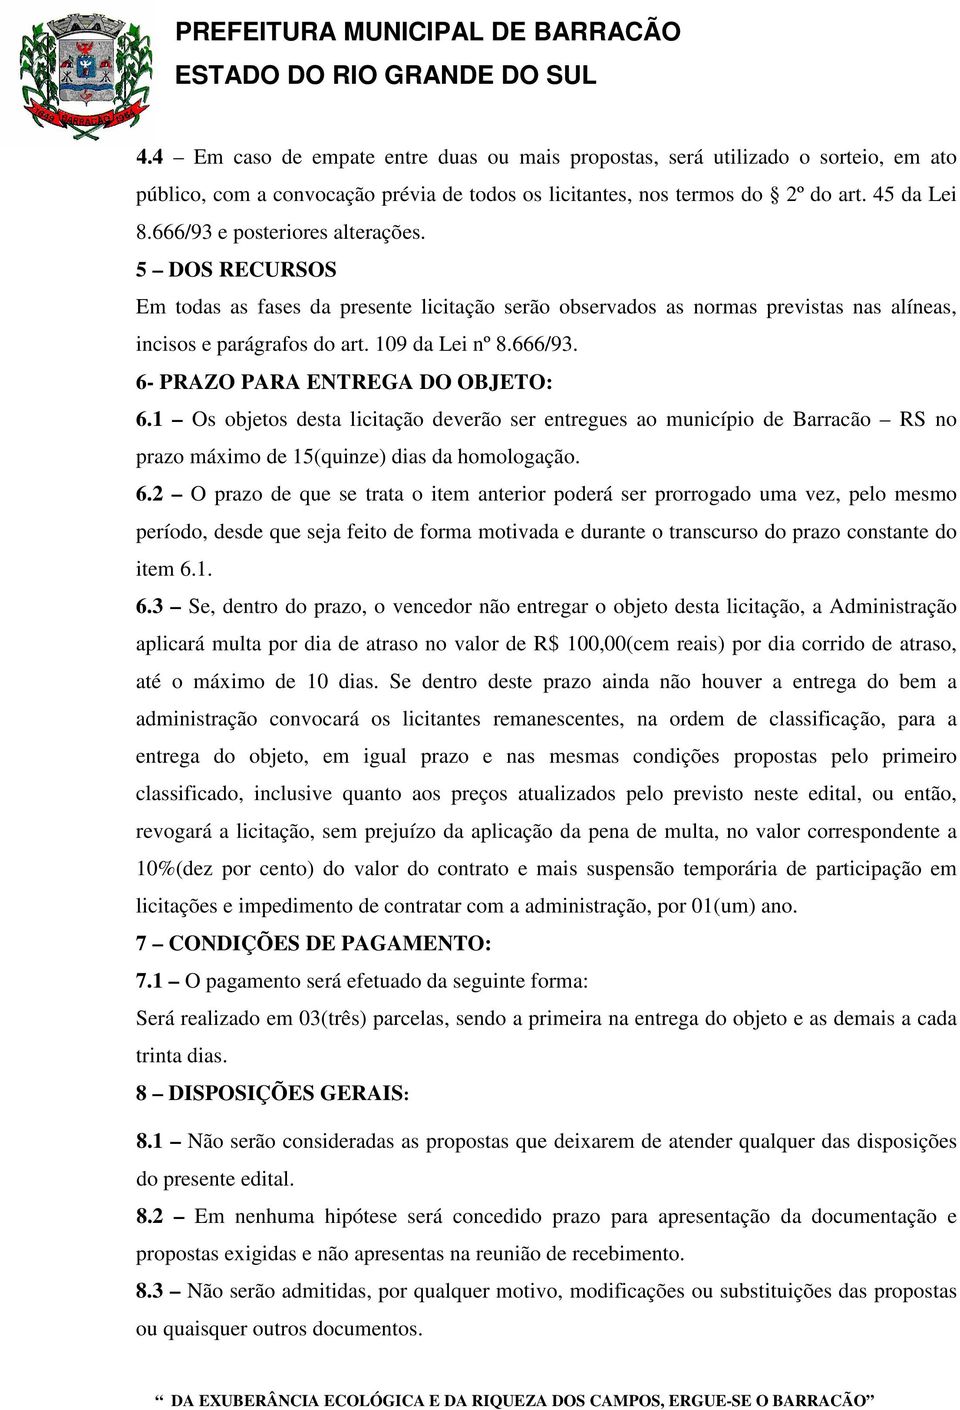 1 Os objetos desta licitação deverão ser entregues ao município de Barracão RS no prazo máximo de 15(quinze) dias da homologação. 6.